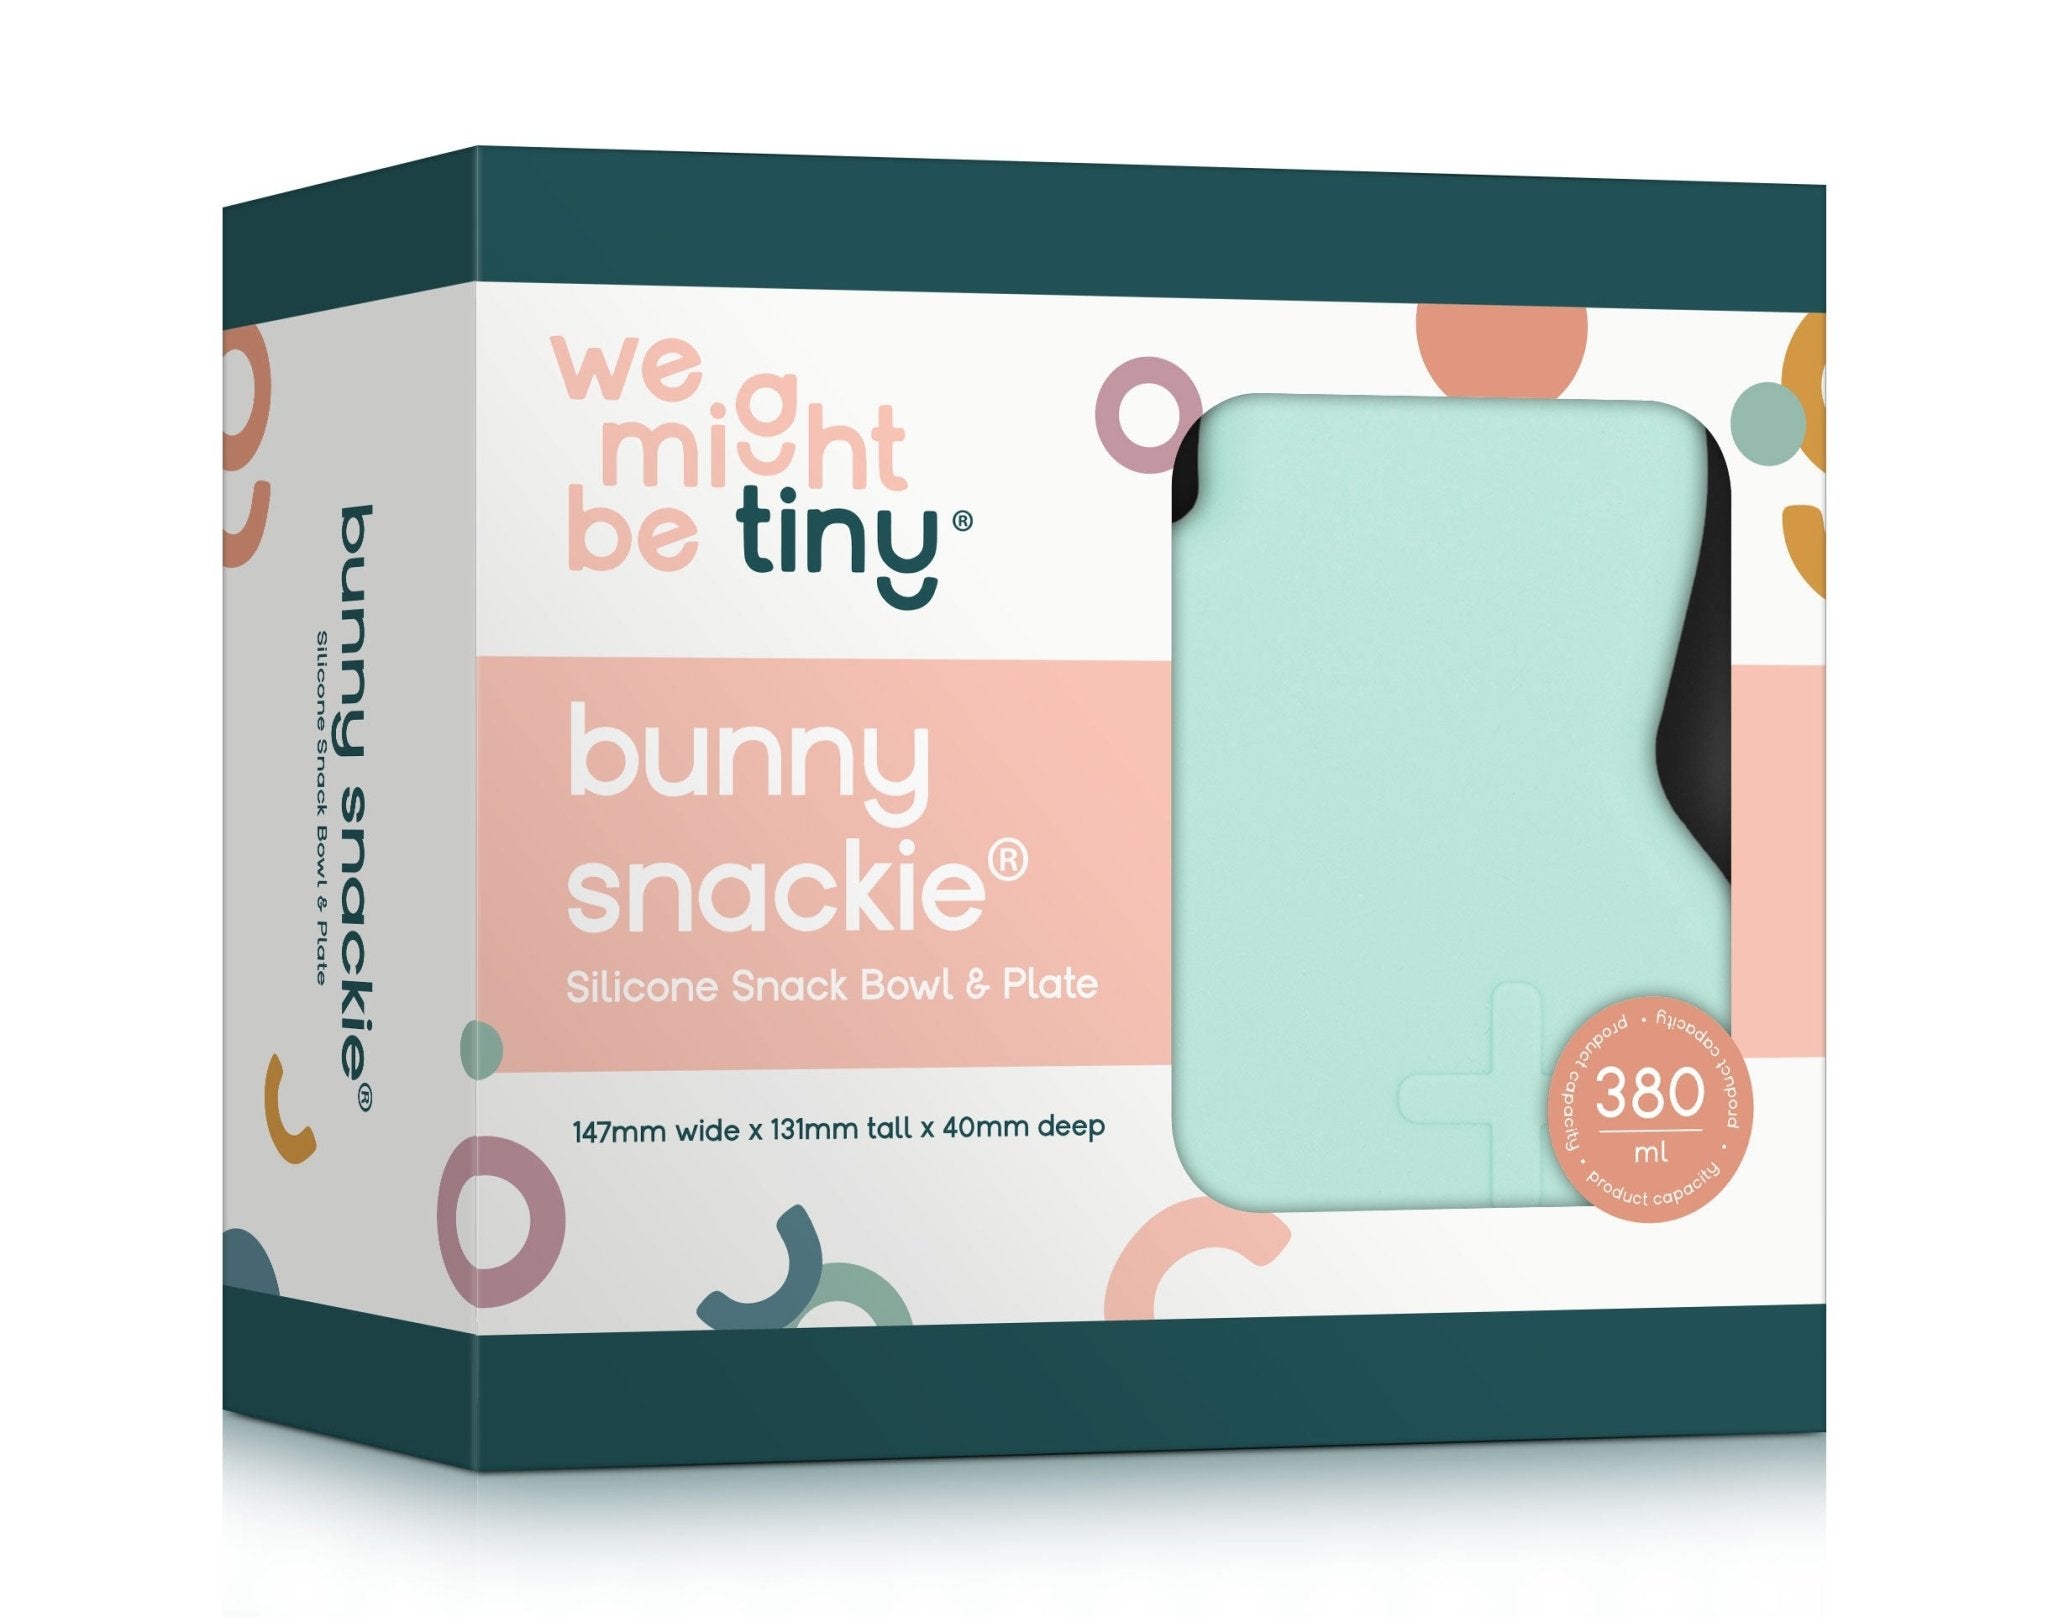 Bunny snackie® - Minty green